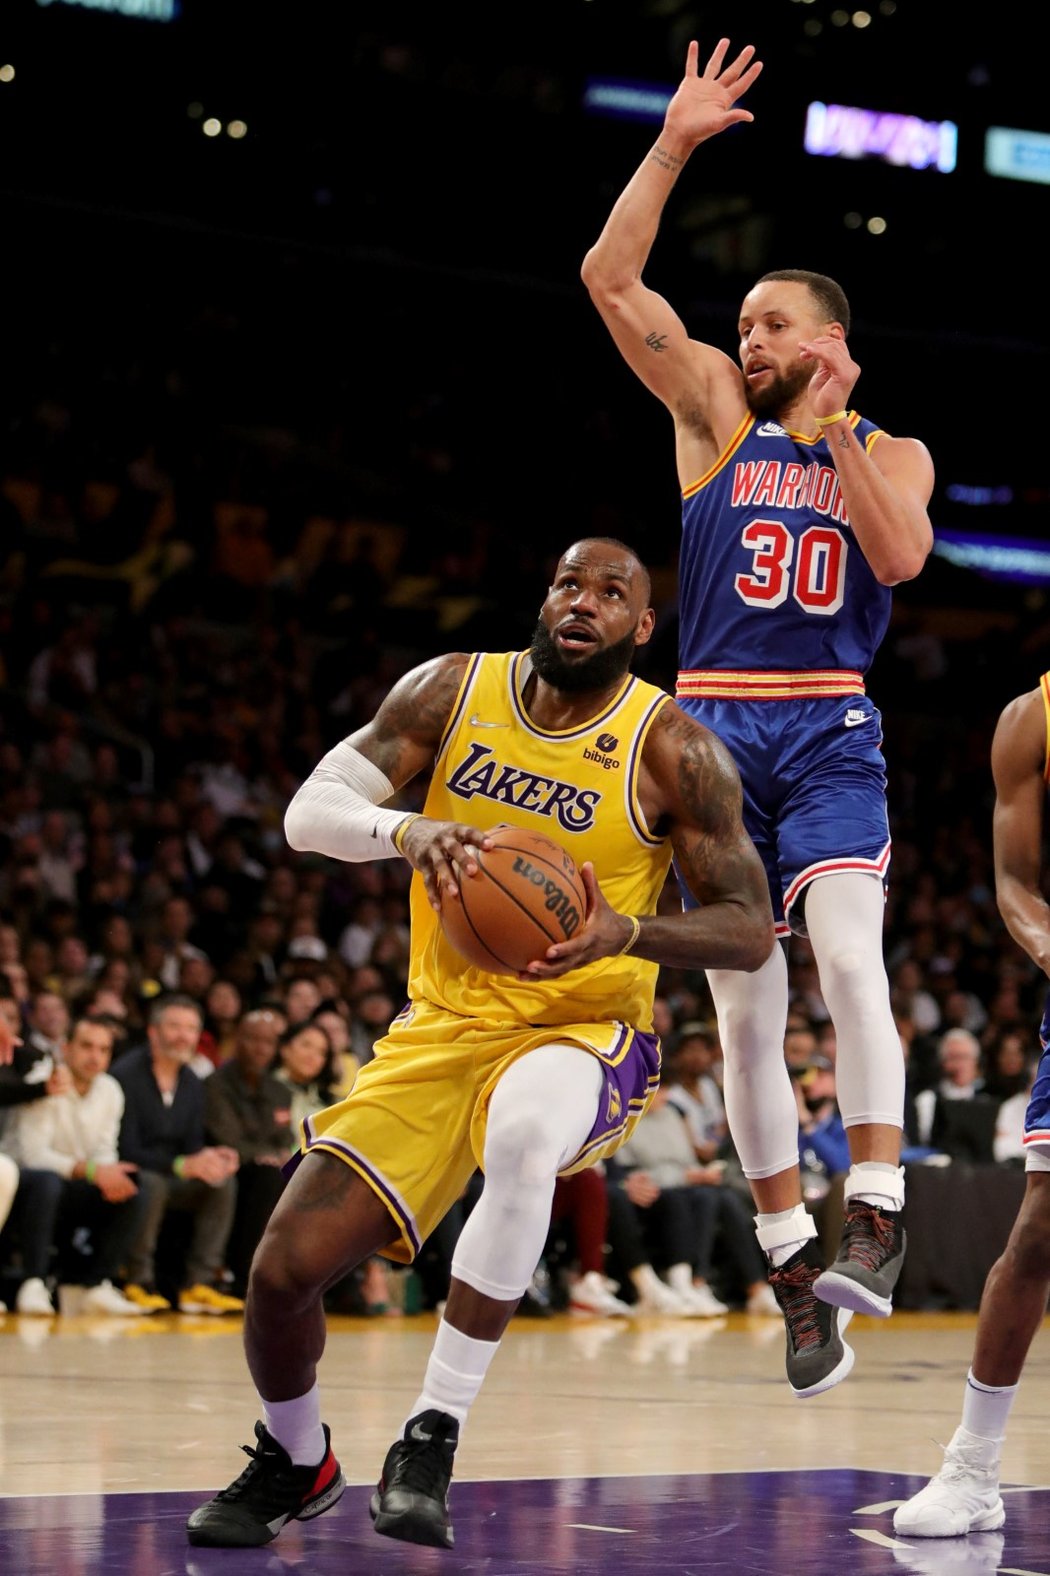 Stephen Curry dal proti Lakers 30 bodů, LeBron James zvládl téměř dvojnásobek